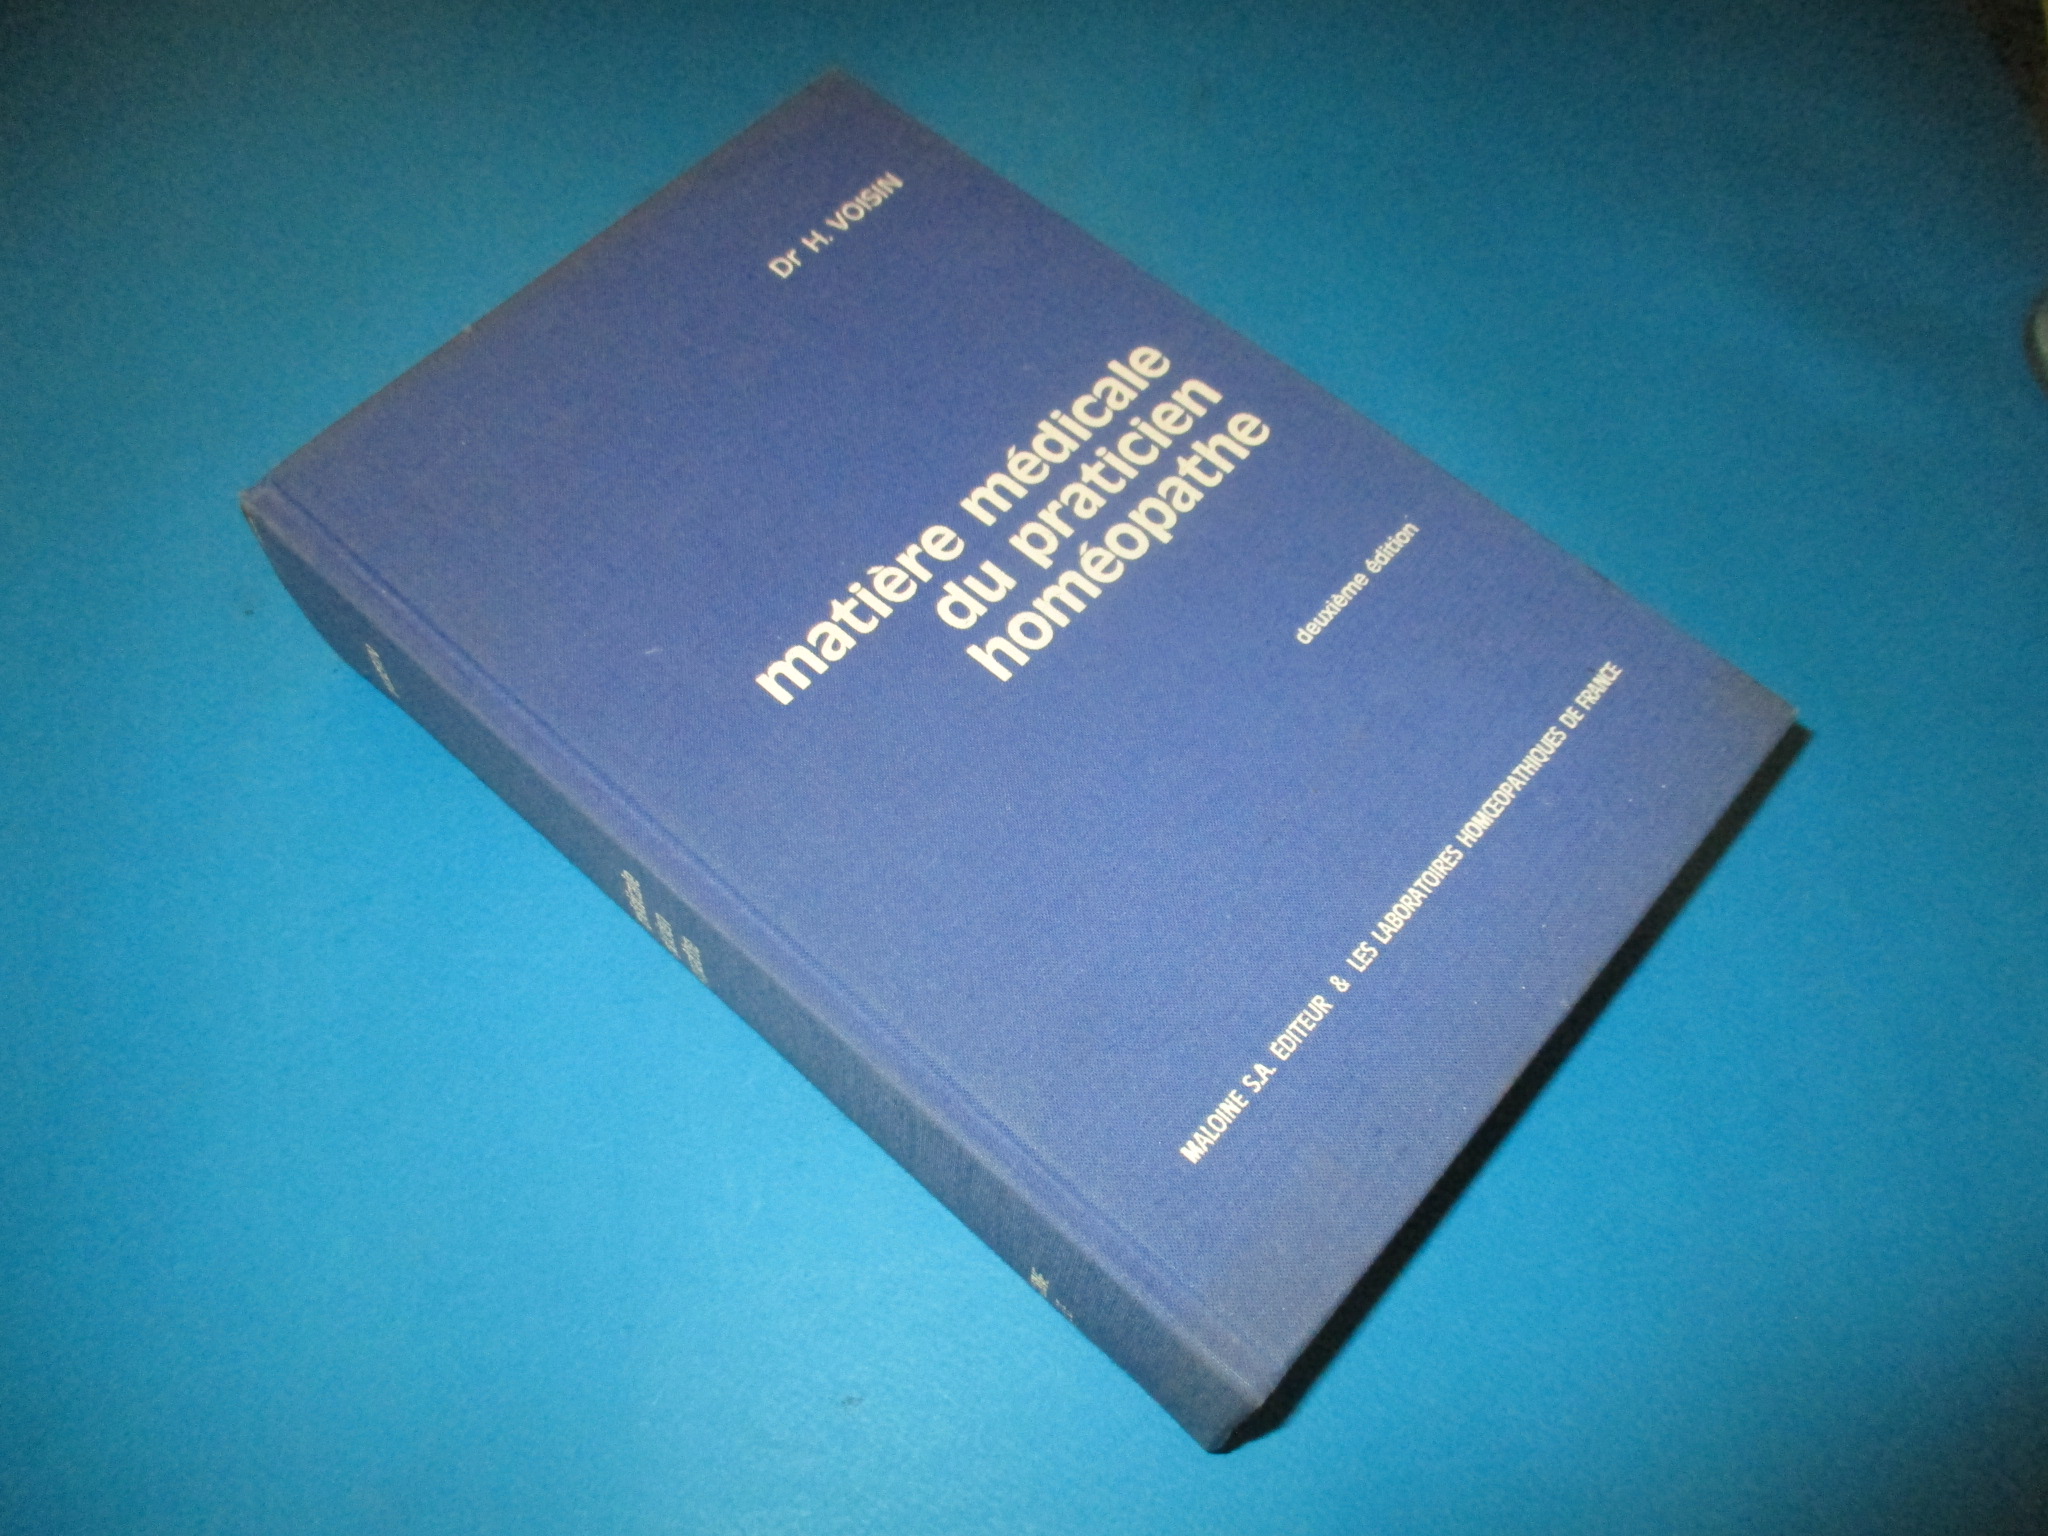 Matière médicale du praticien homéopathe, Dr H. Voisin, Maloine 1982